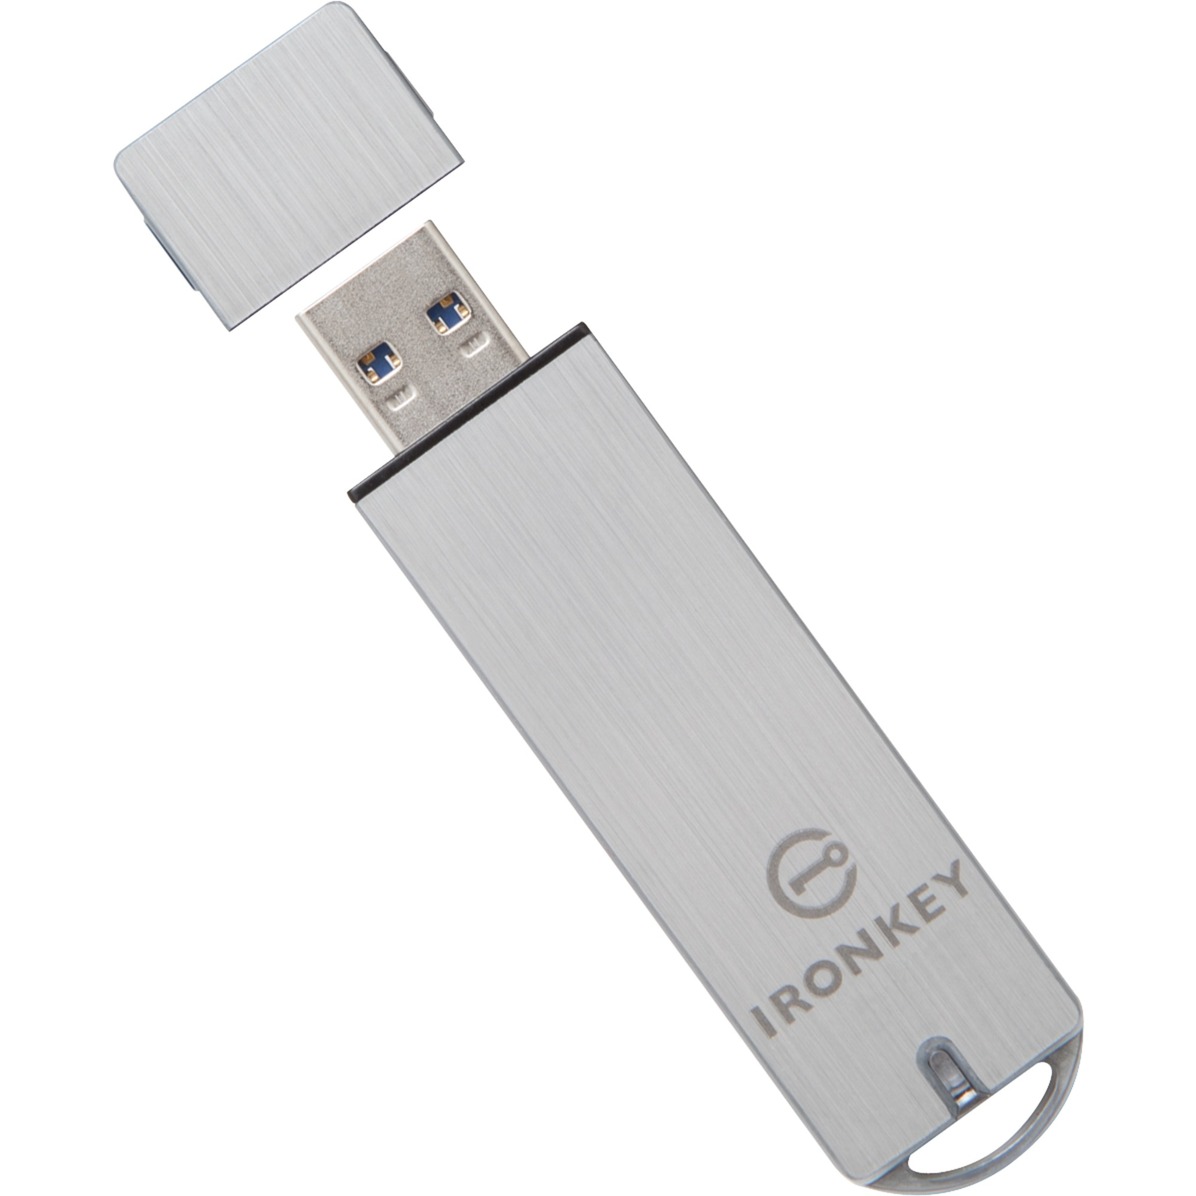 IronKey S1000 Basic 8 GB, USB-Stick von Kingston